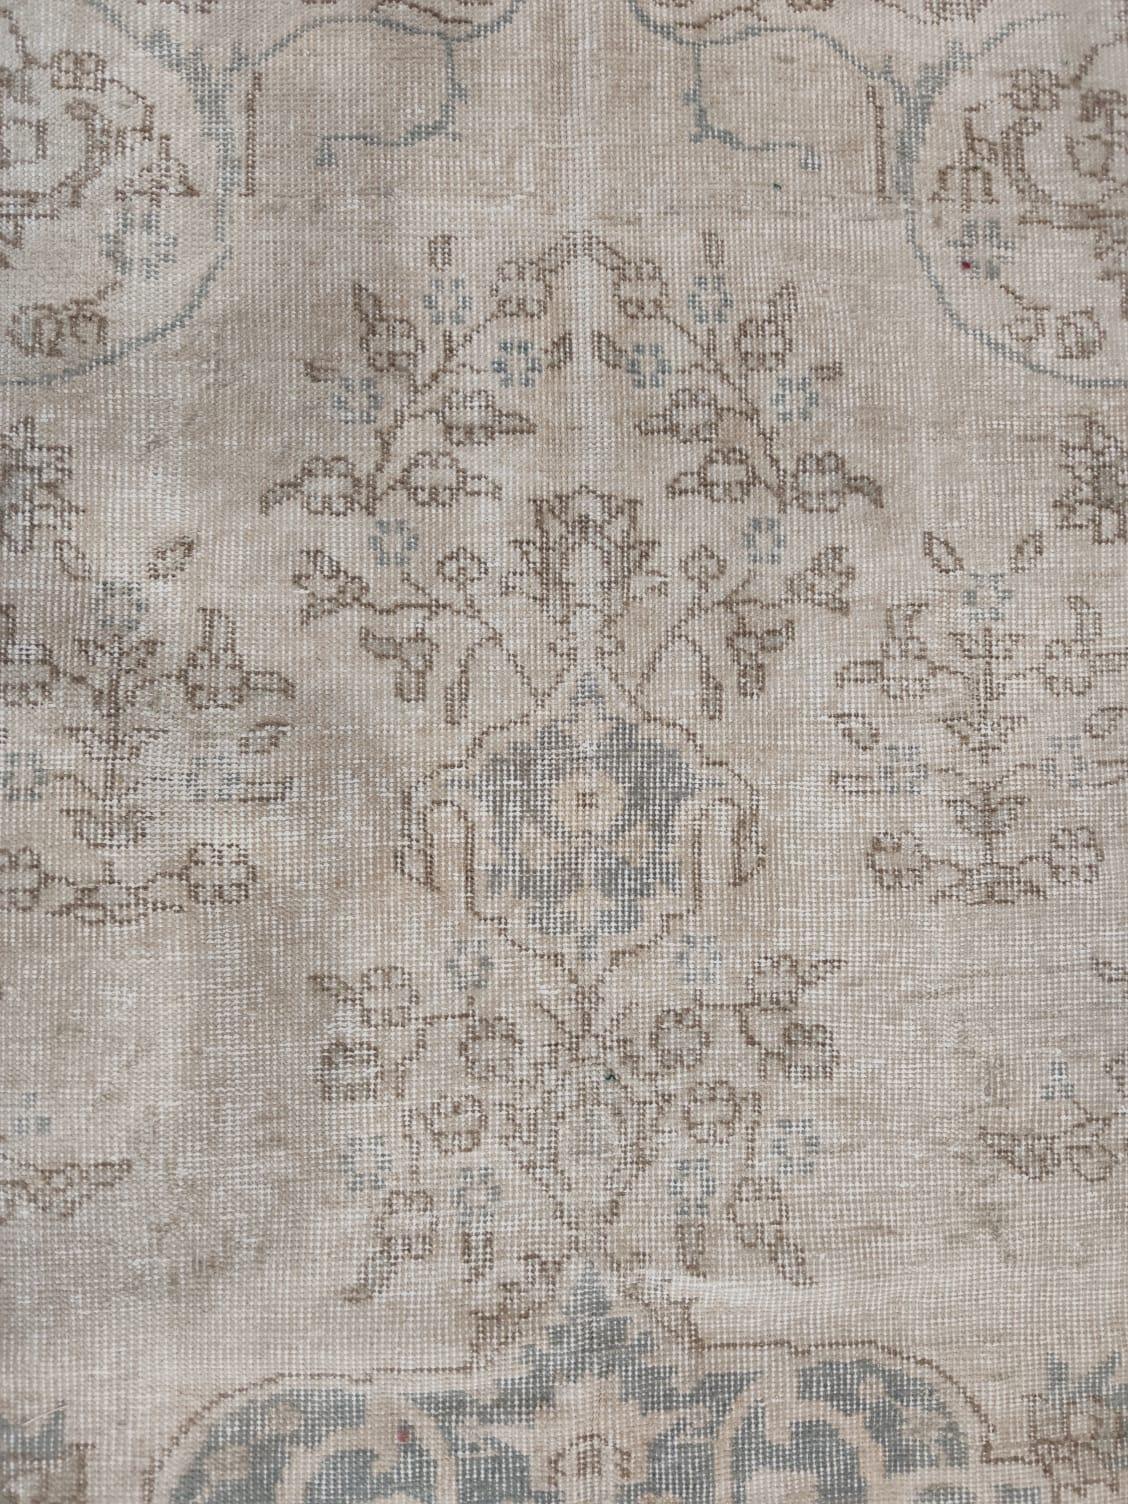 Hand-Knotted 7.2x10.8 ft Vintage Medallion Design Rug. Neutral Colors, Handmade Large Carpet For Sale